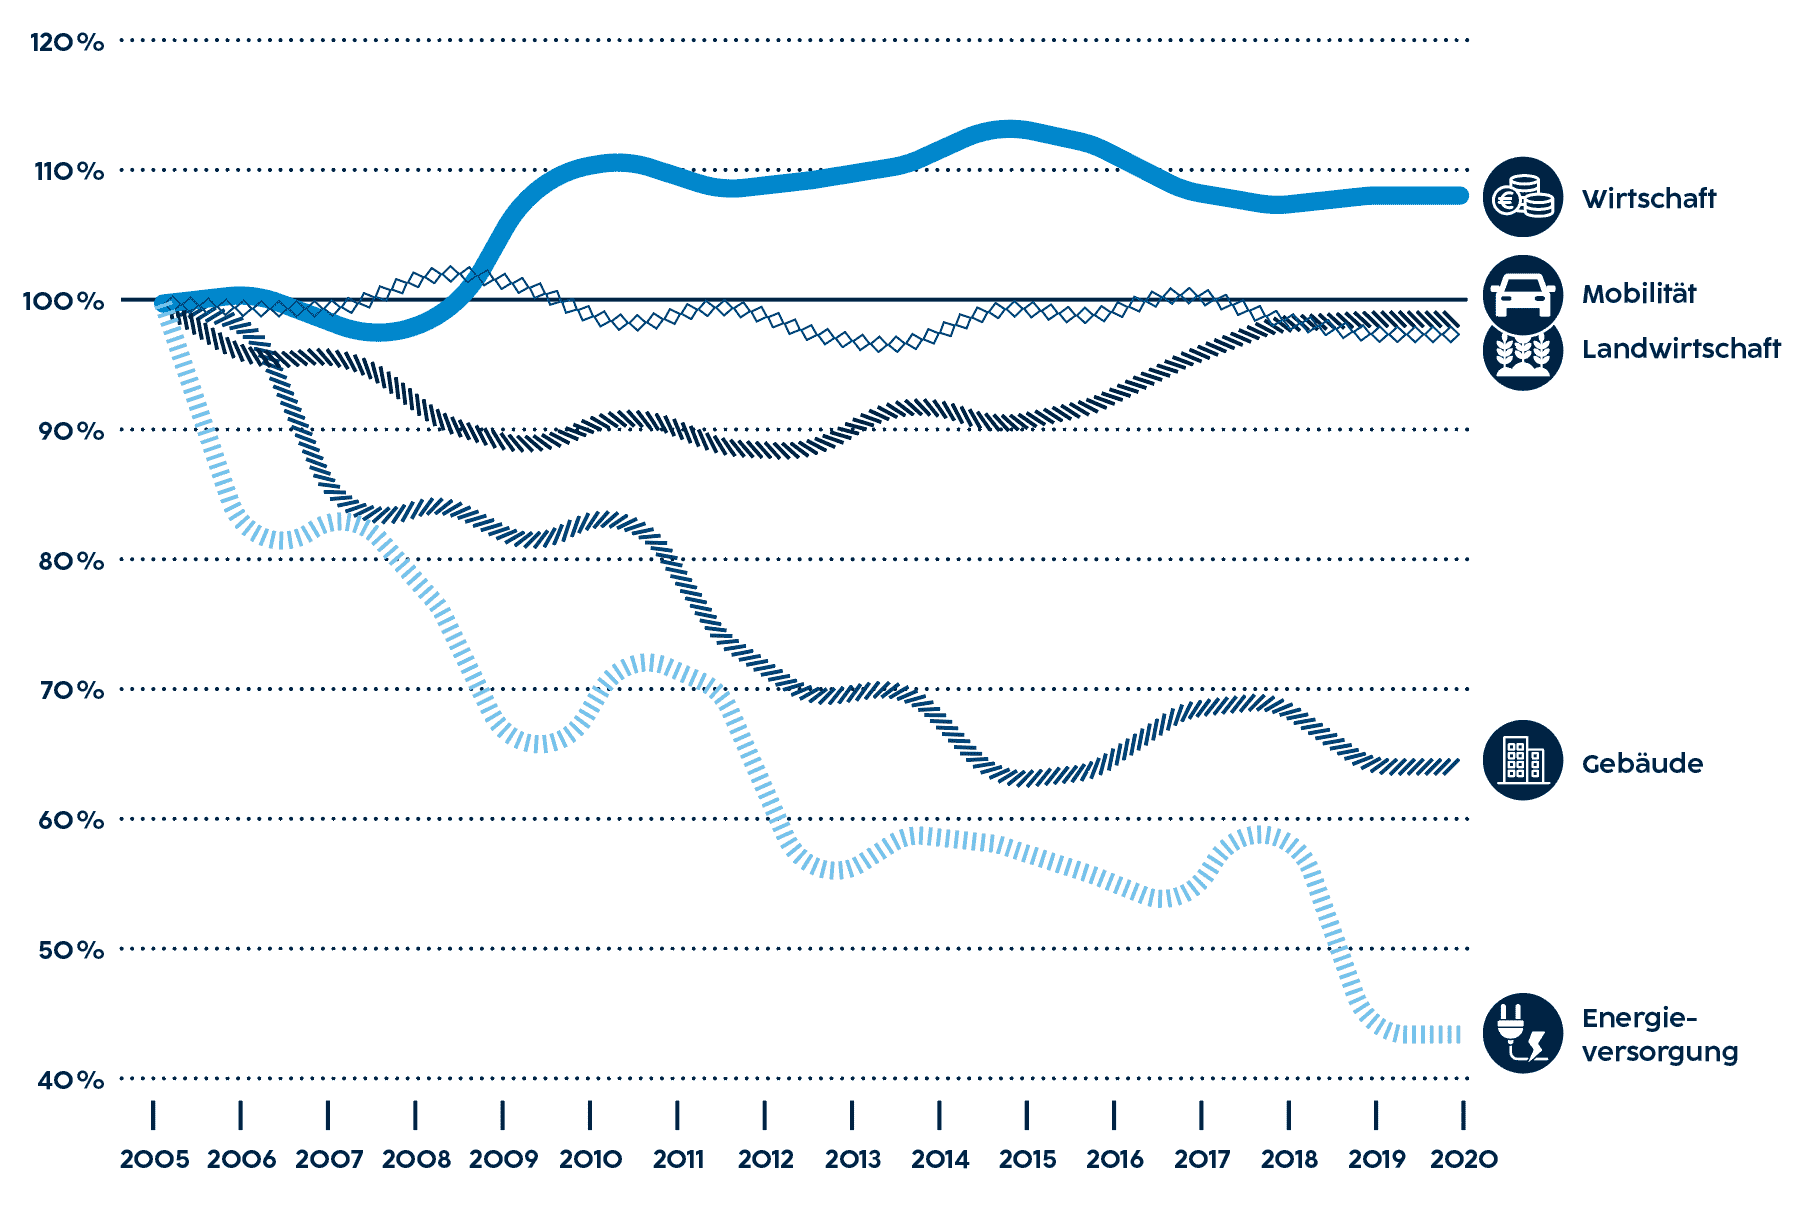 Die Grafik zeigt die Treibhausgasemissionen non-ETS in Niederösterreich, in Prozent nach KEP-Bereichen. Während die Treibhausgasemissionen durch Mobilität und Landwirtschaft seit 2005 stabil geblieben sind, gab es deutliche Fortschritte in den Bereichen Energieversorgung und Gebäude. Durch die Wirtschaft verursachte Emissionen sind im gleichen Zeitraum sogar etwas angestiegen.